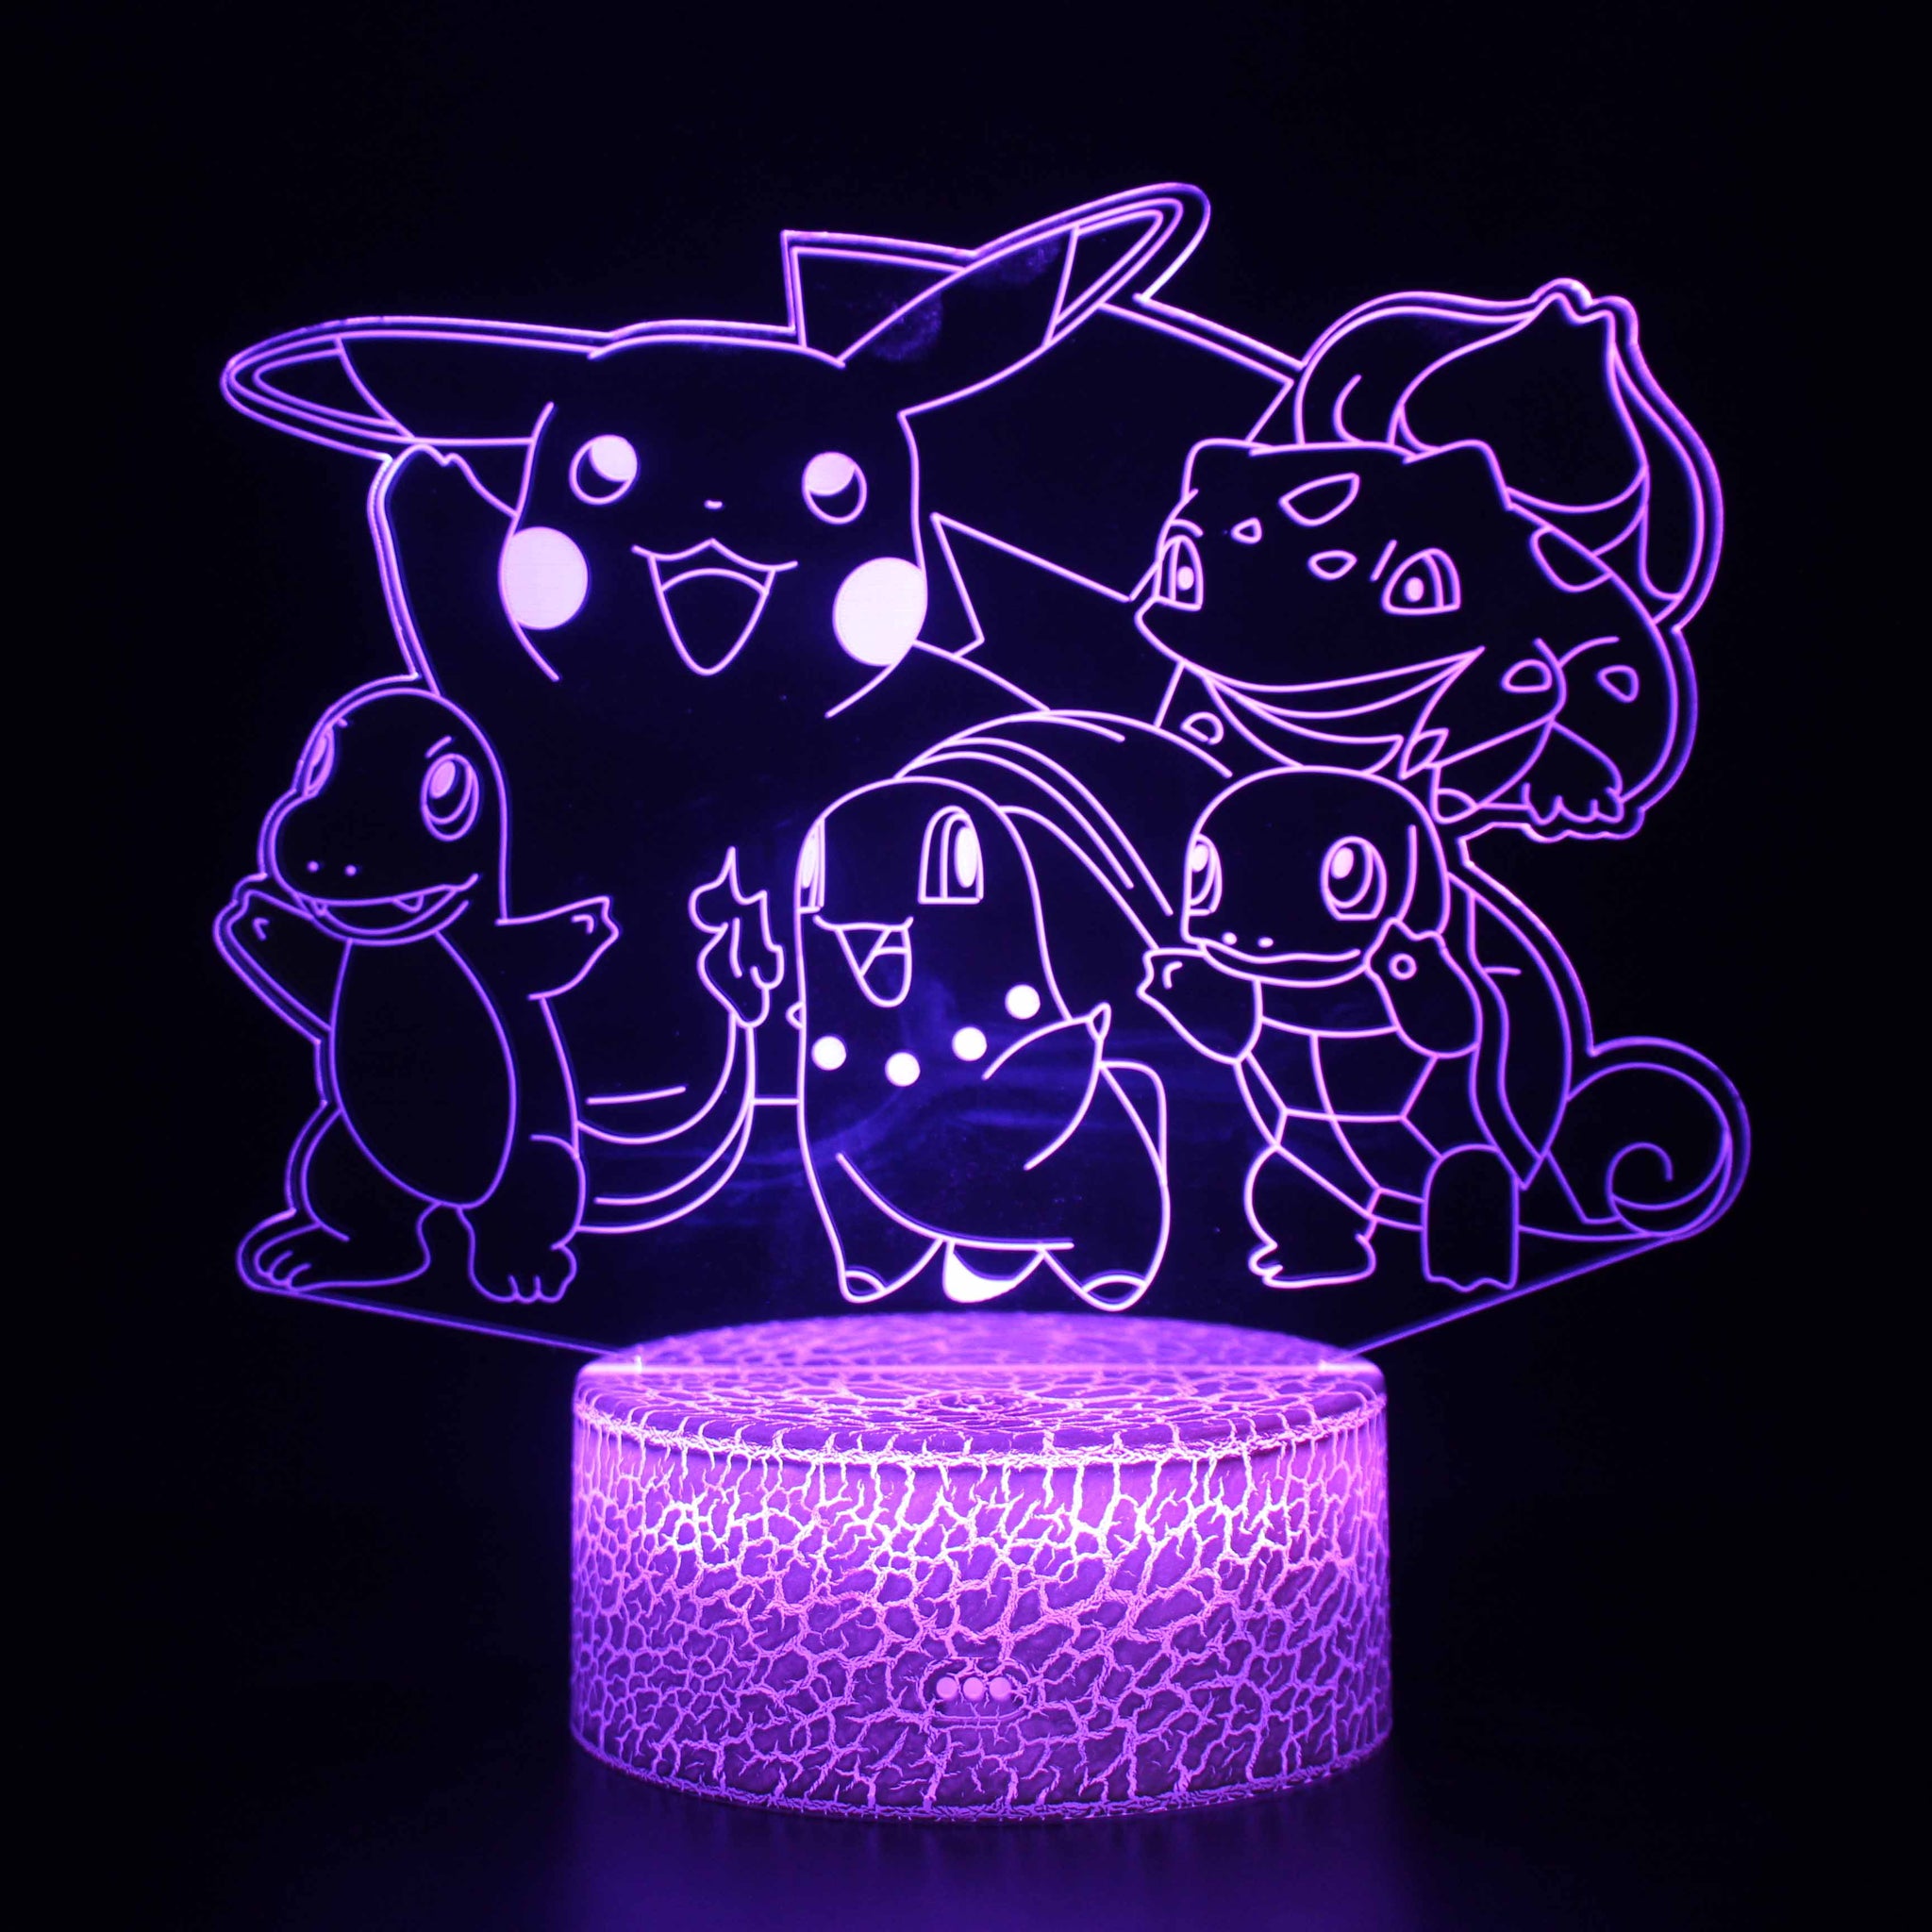 Pokemon lamp led light GAMER GAME DECORATION HOME LED POKEMONGO 3D